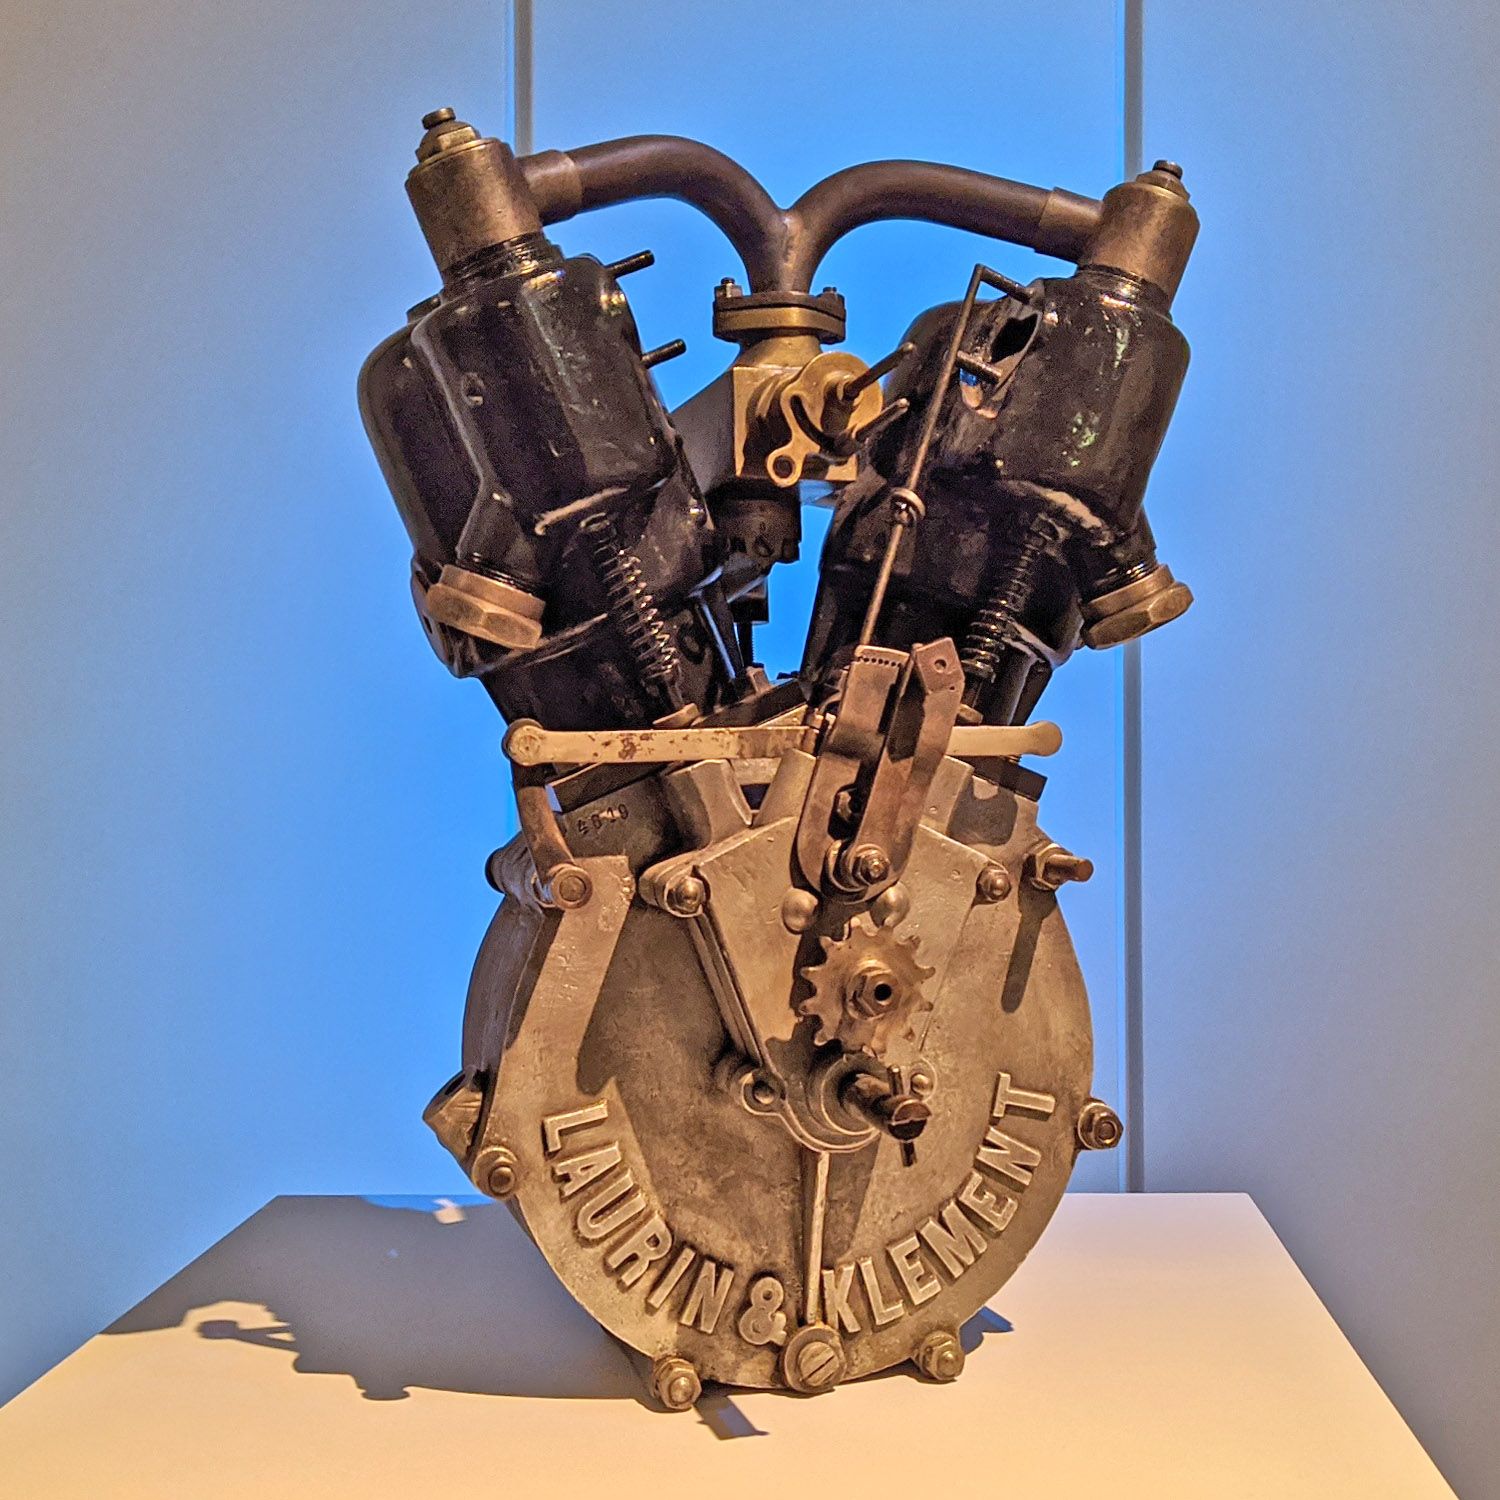 Двигатель автомобиля Laurin & Klement. Нач. ХХ века. Политехнический музей